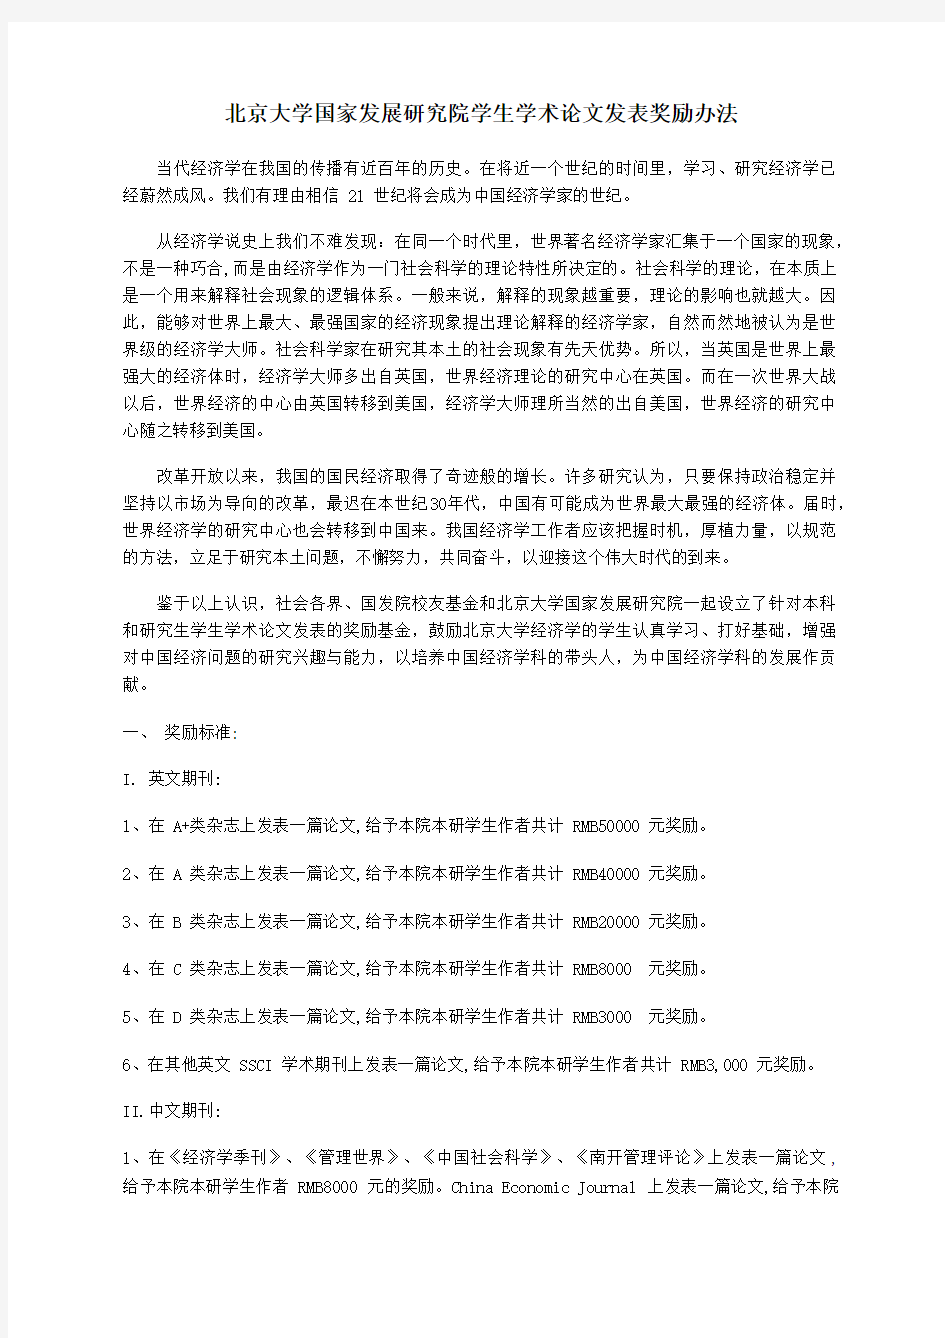 北京大学国家发展研究院学生学术论文发表奖励办法